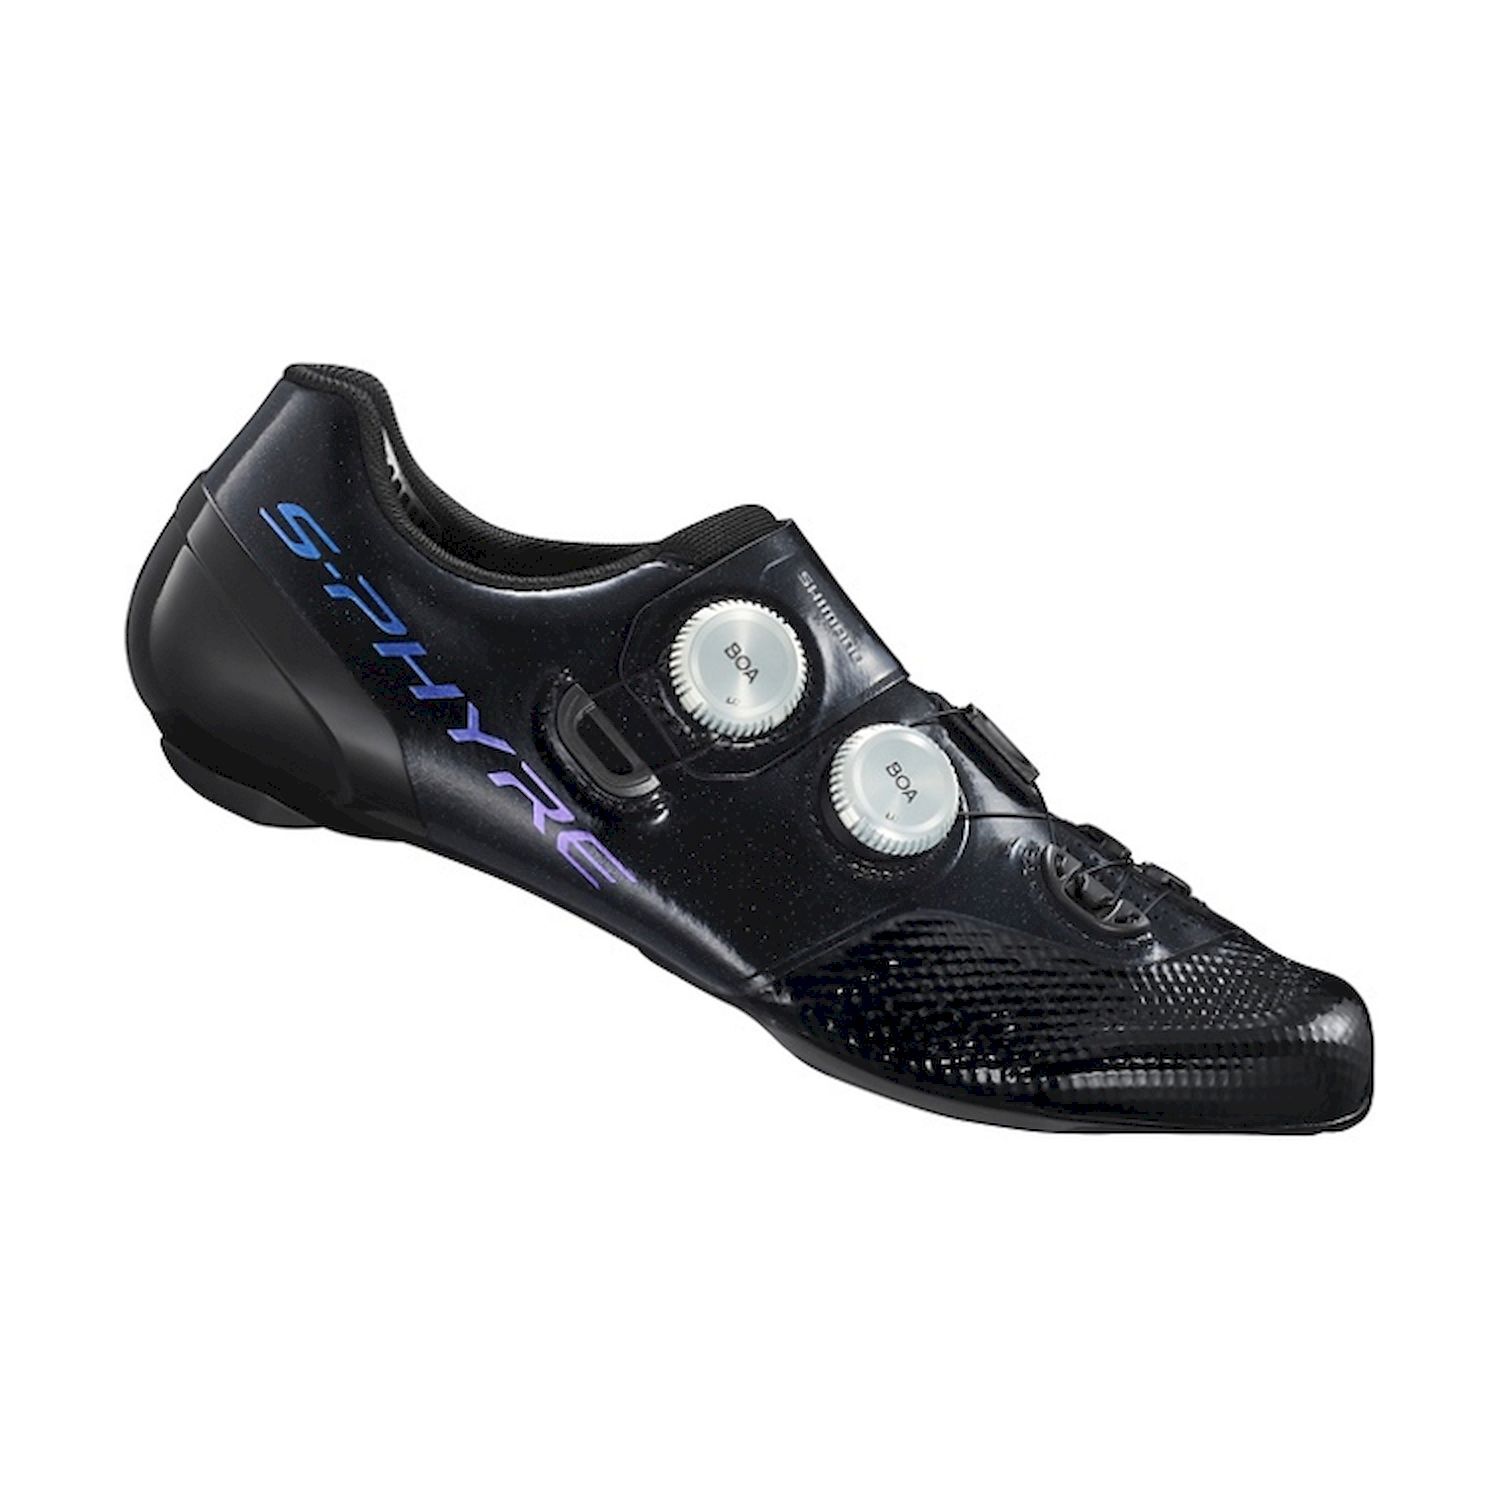 Shimano RC902S - Cycling shoes - Men's